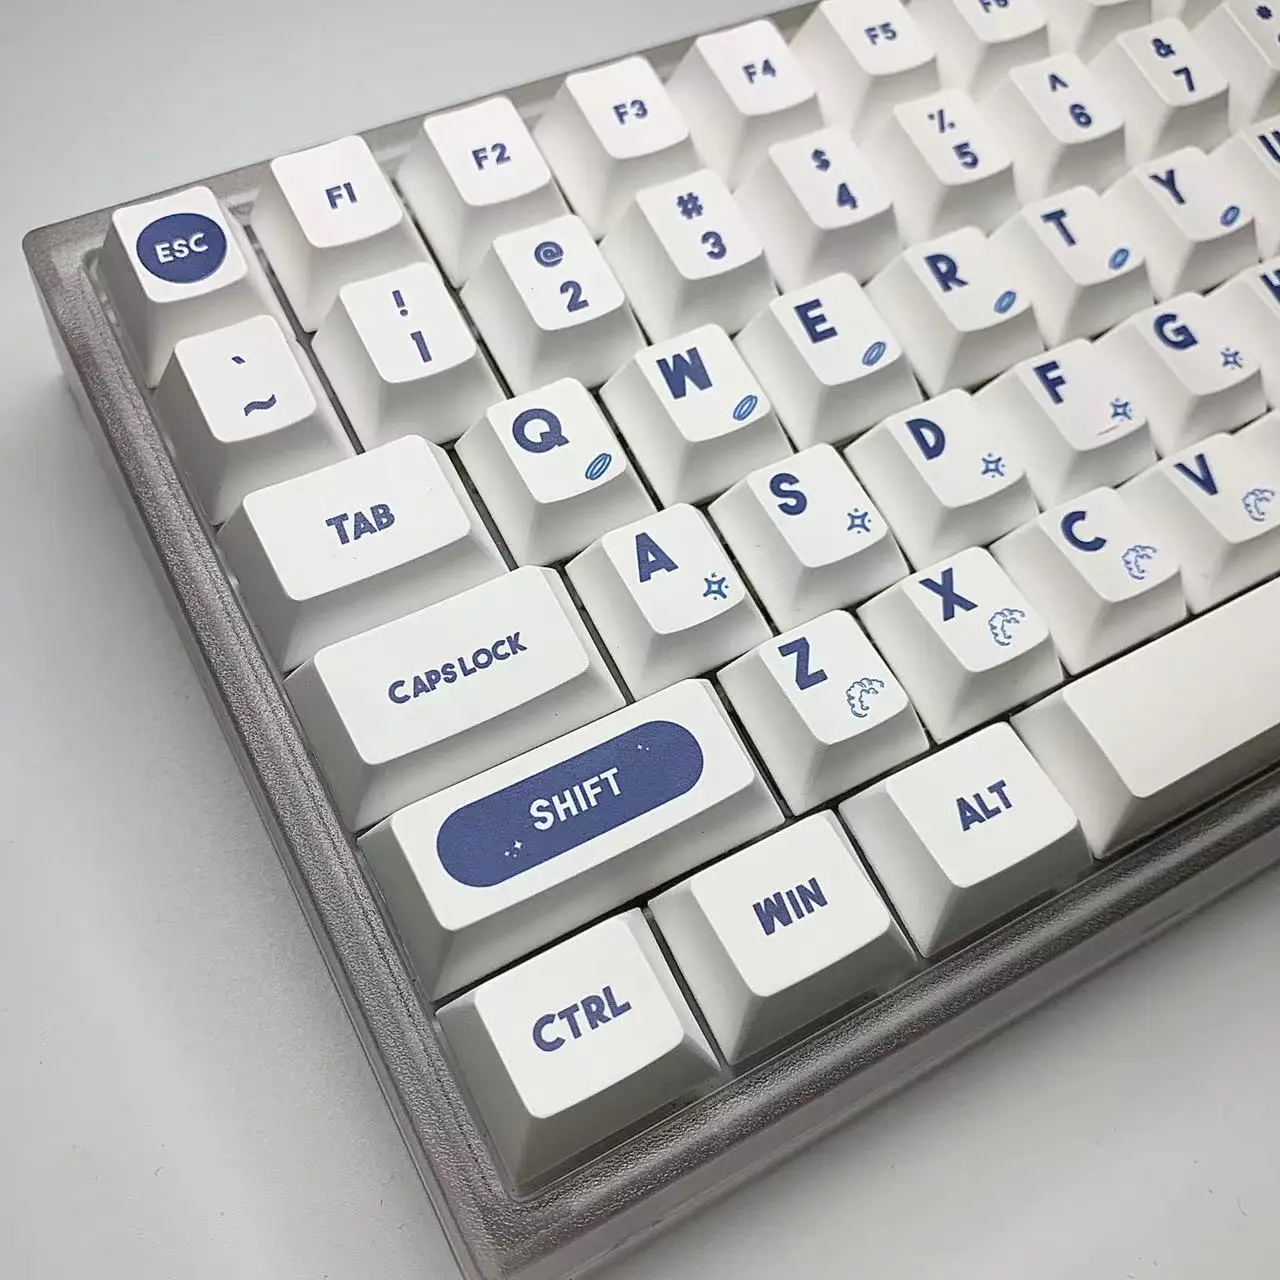 Колпачок для ключей GMK Cosmonaut Изготовленный на Заказ 129 Клавиш с Вишневым Профилем PBT Keycaps для Механической клавиатуры Сублимационный Колпачок для Персонализации красителя Keycap